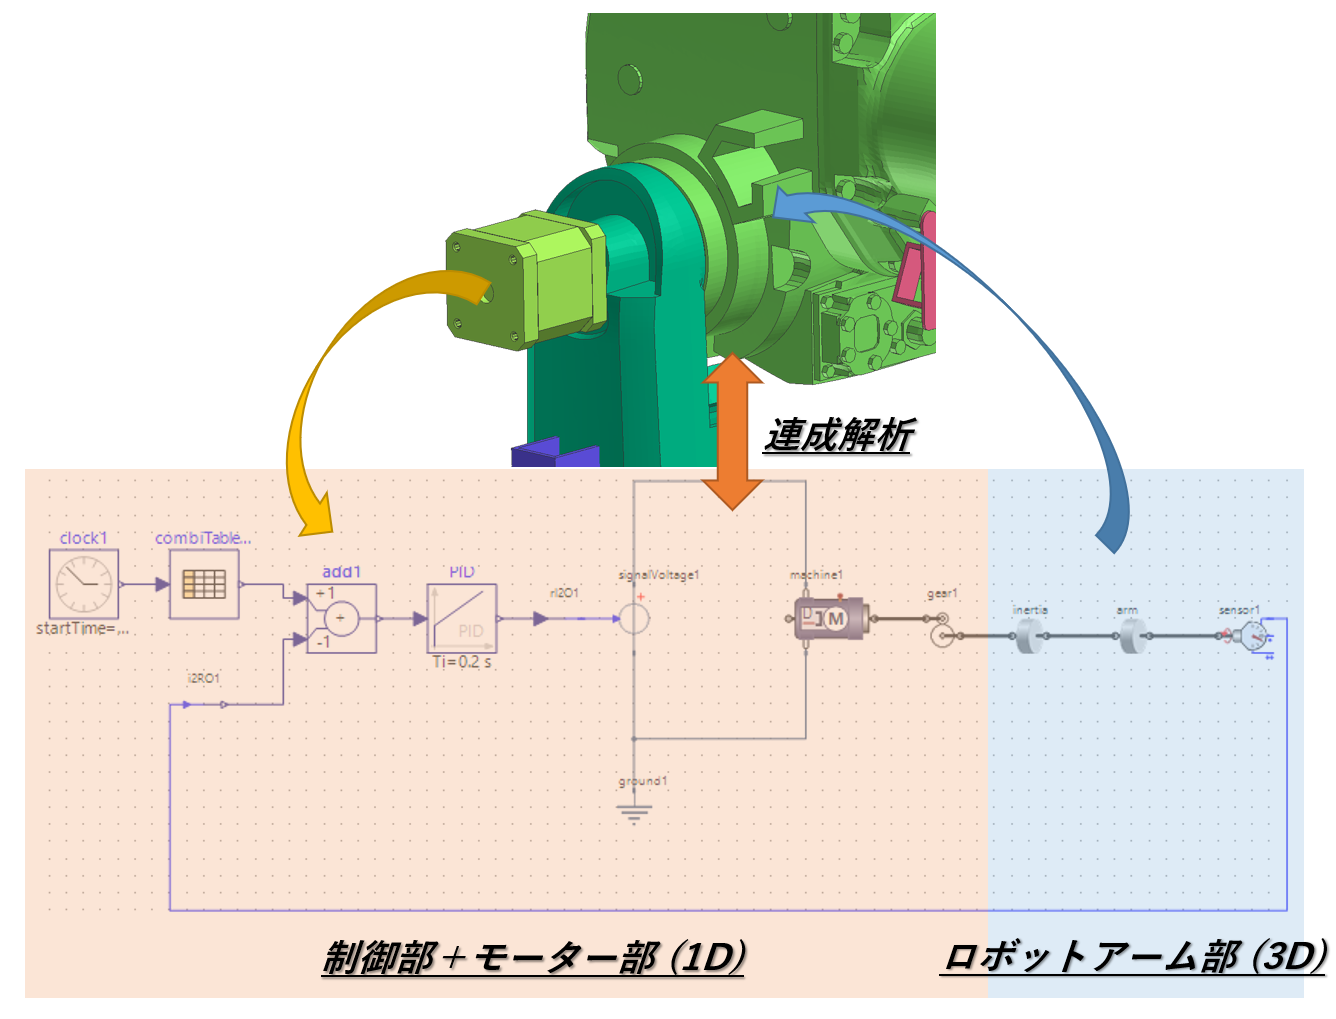 解析事例 -1Dシミュレーションとの連成解析事例(モーター駆動によるロボットアームのPID制御)-